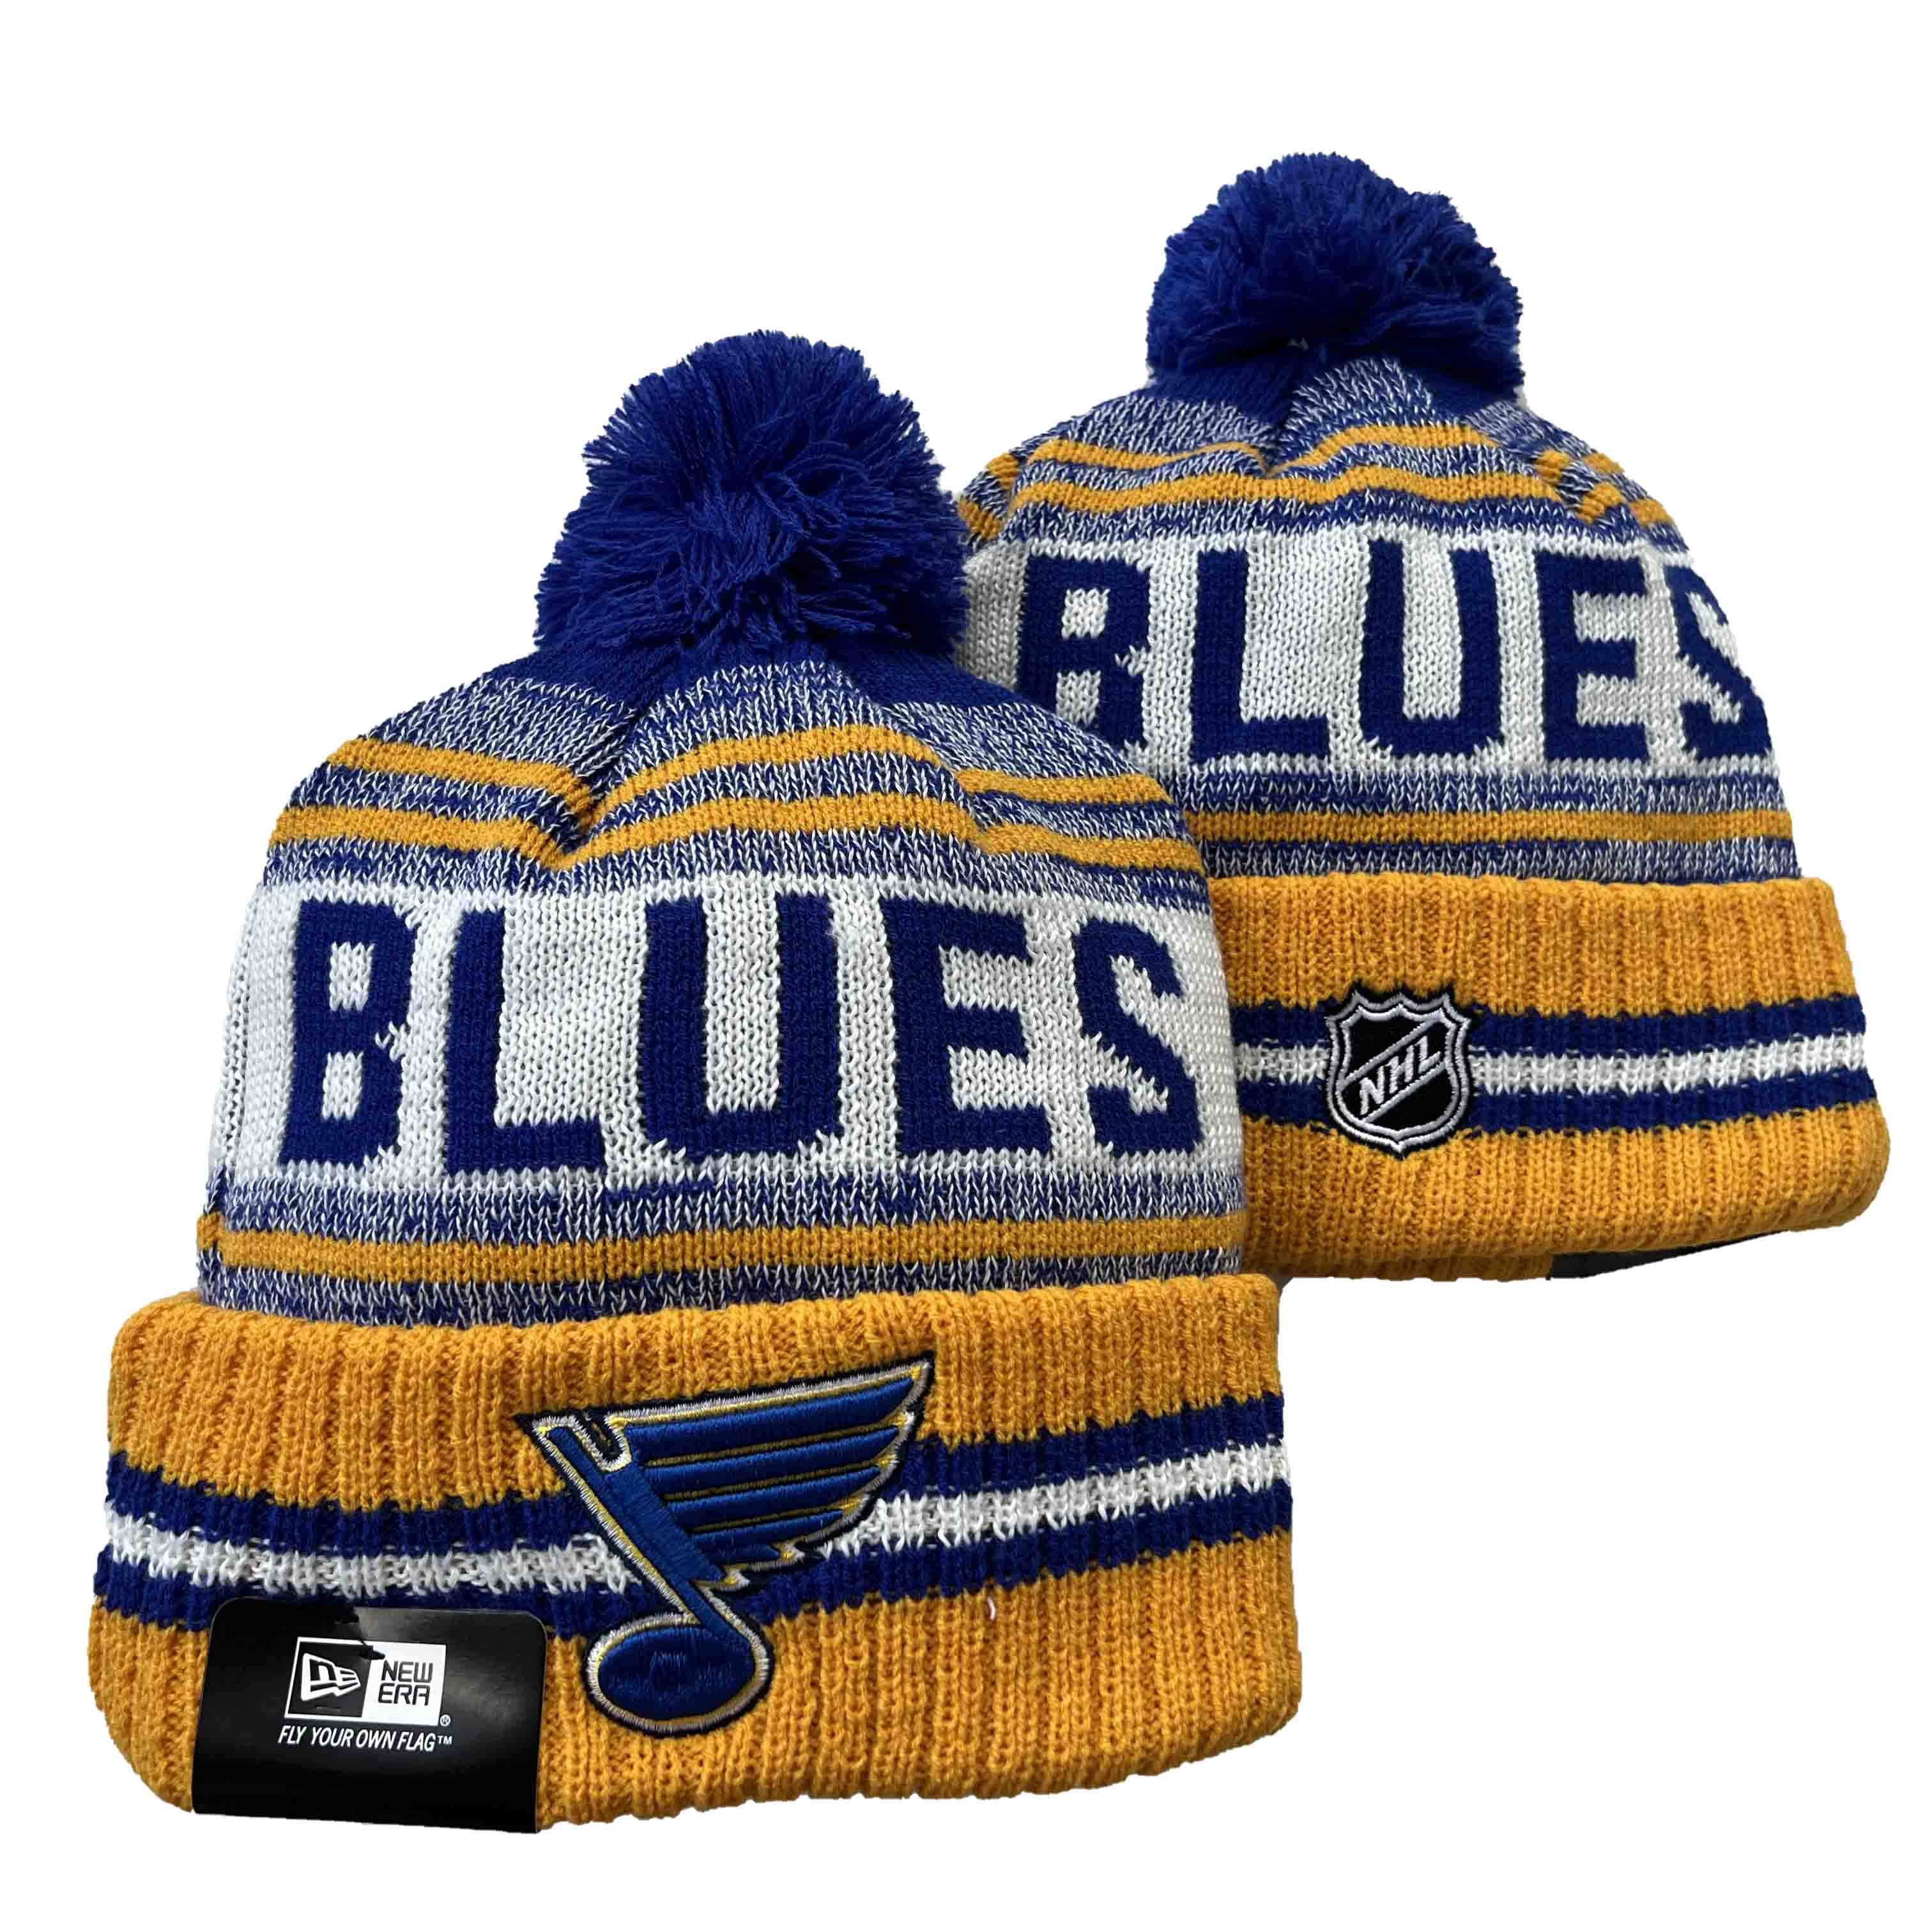 St. Louis Blues Knit Hats -2